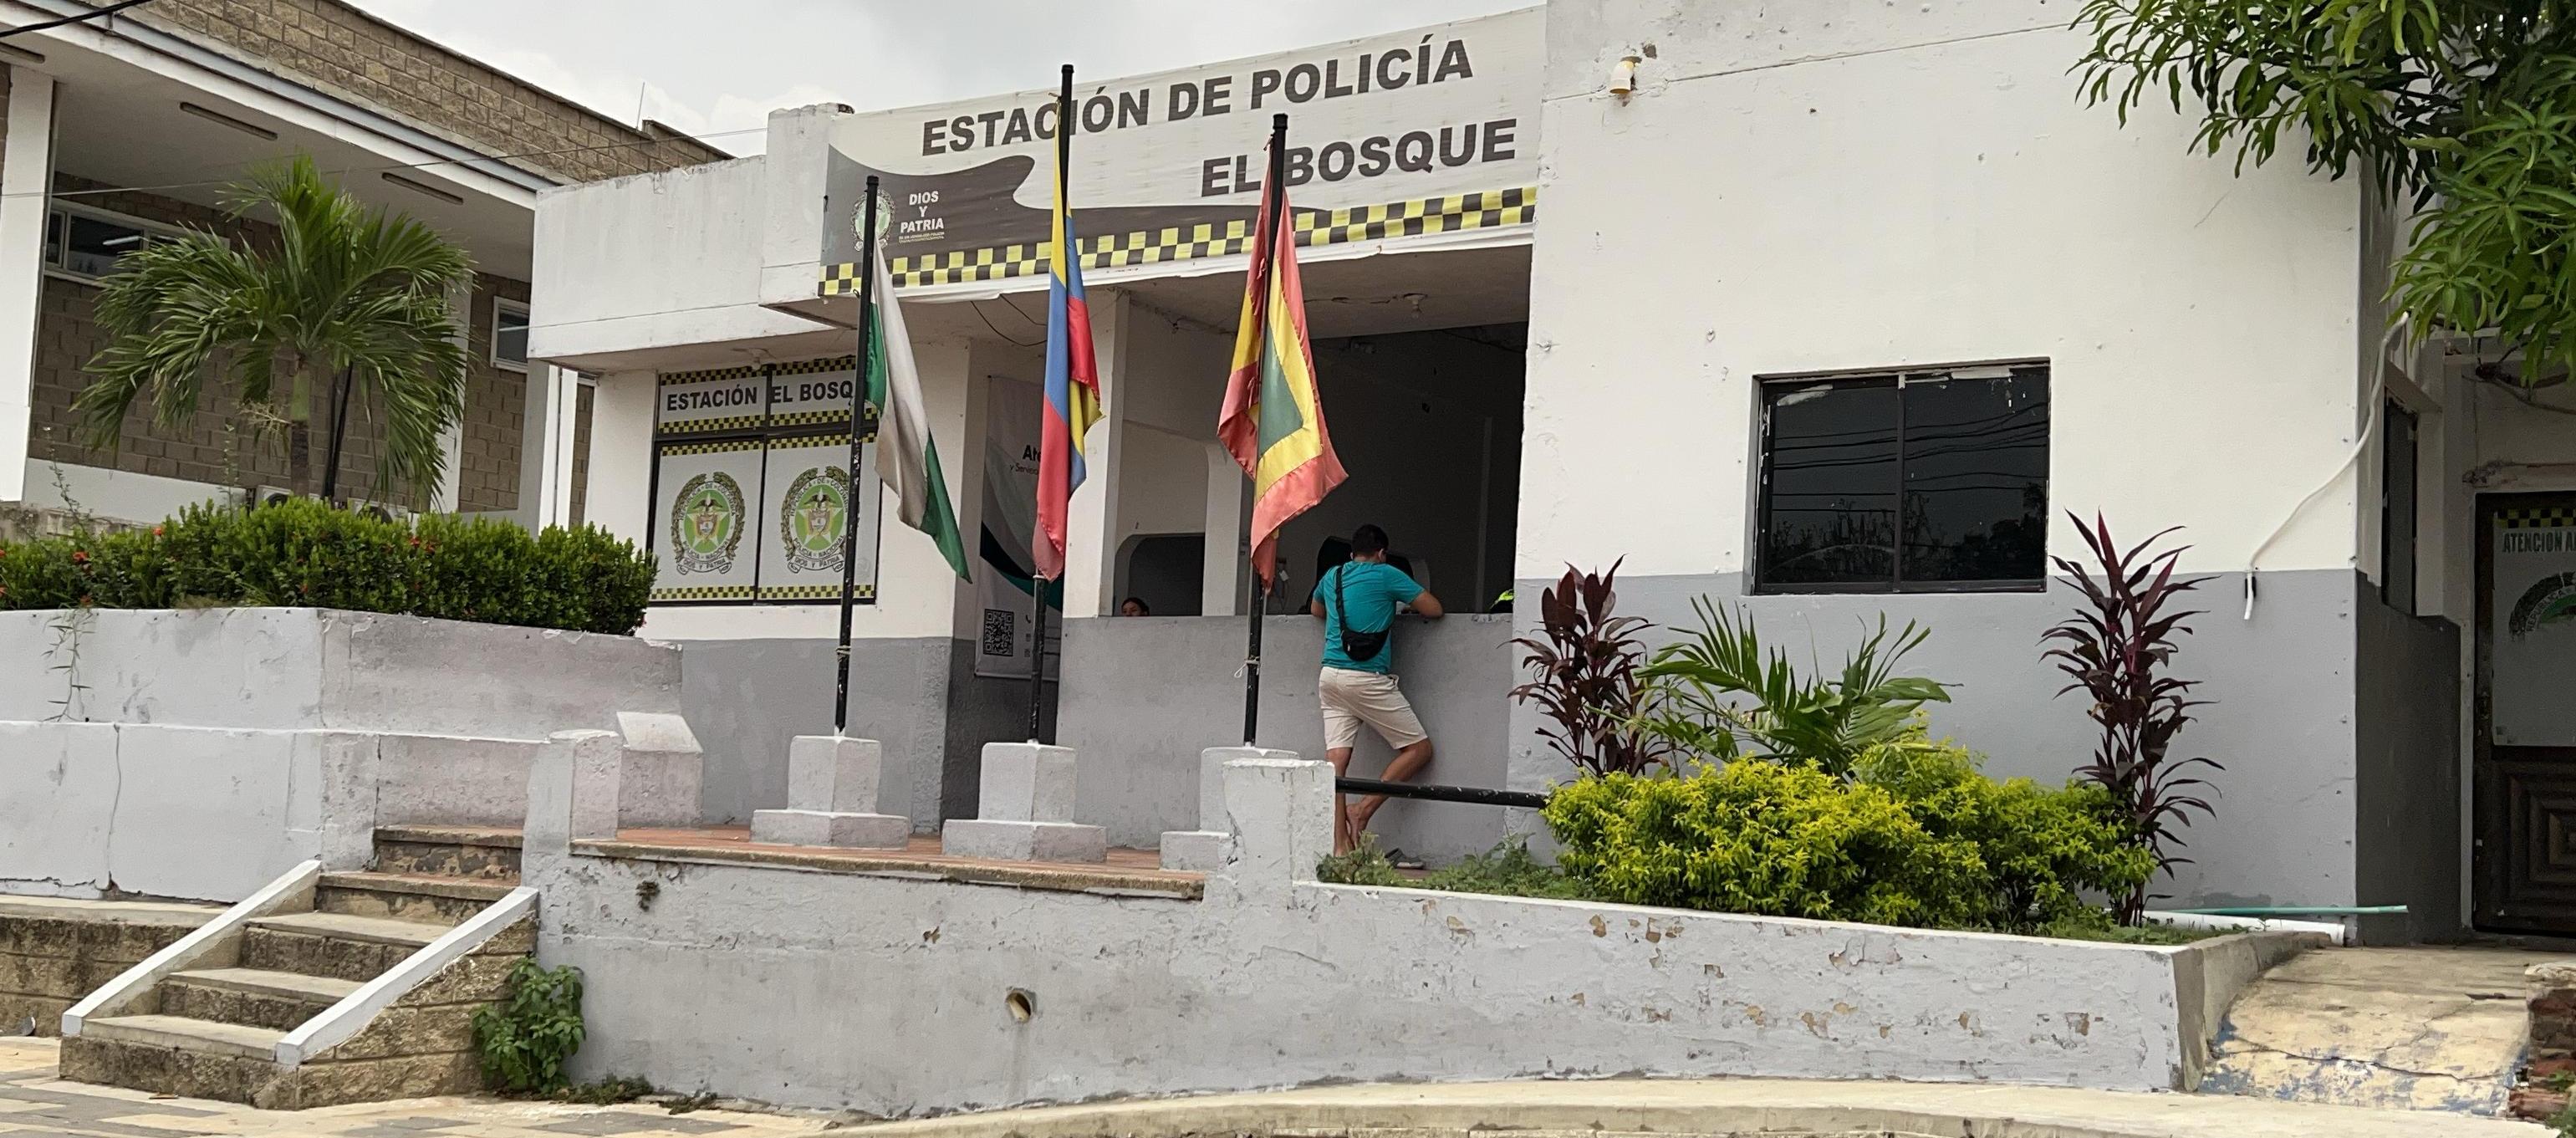 Estación de Policía del barrio El Bosque.